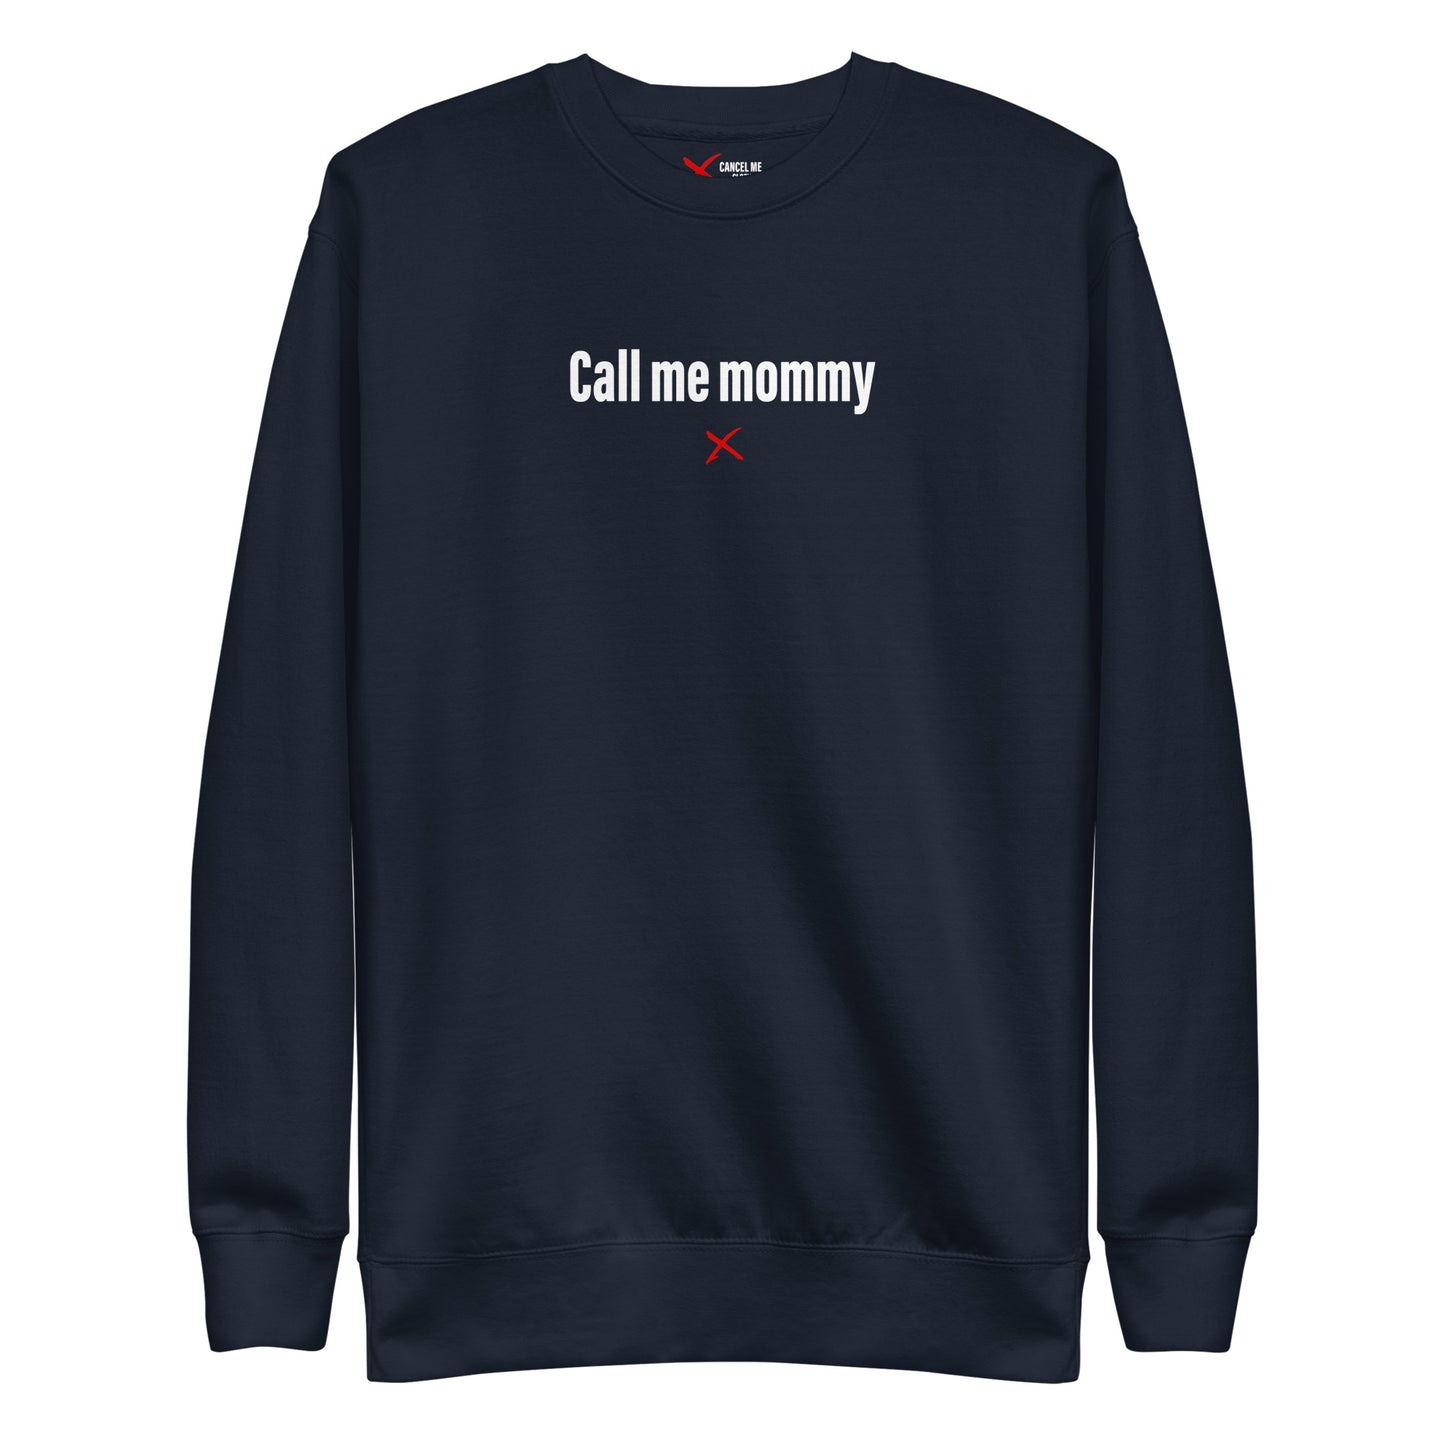 Call me mommy - Sweatshirt